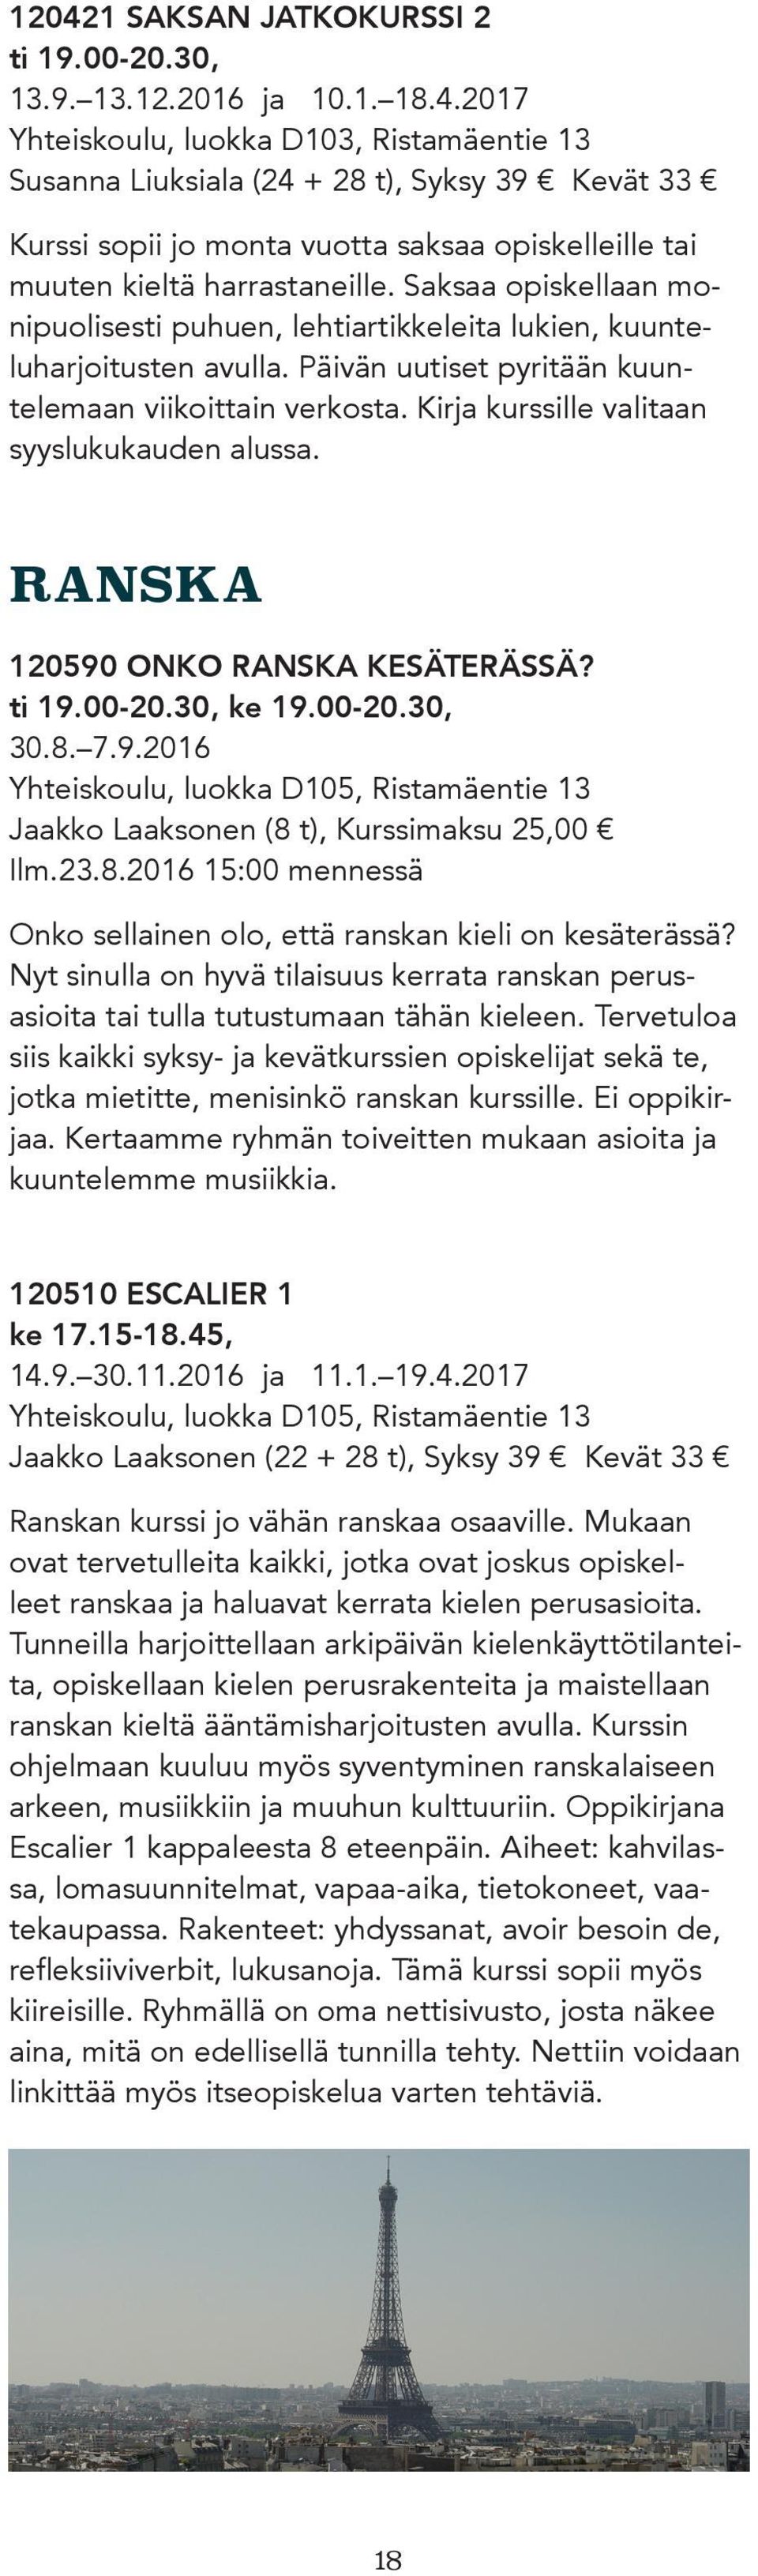 Kirja kurssille valitaan syyslukukauden alussa. RANSKA 120590 ONKO RANSKA KESÄTERÄSSÄ? ti 19.00-20.30, ke 19.00-20.30, 30.8. 7.9.2016 Yhteiskoulu, luokka D105, Ristamäentie 13 Jaakko Laaksonen (8 t), Kurssimaksu 25,00 Ilm.